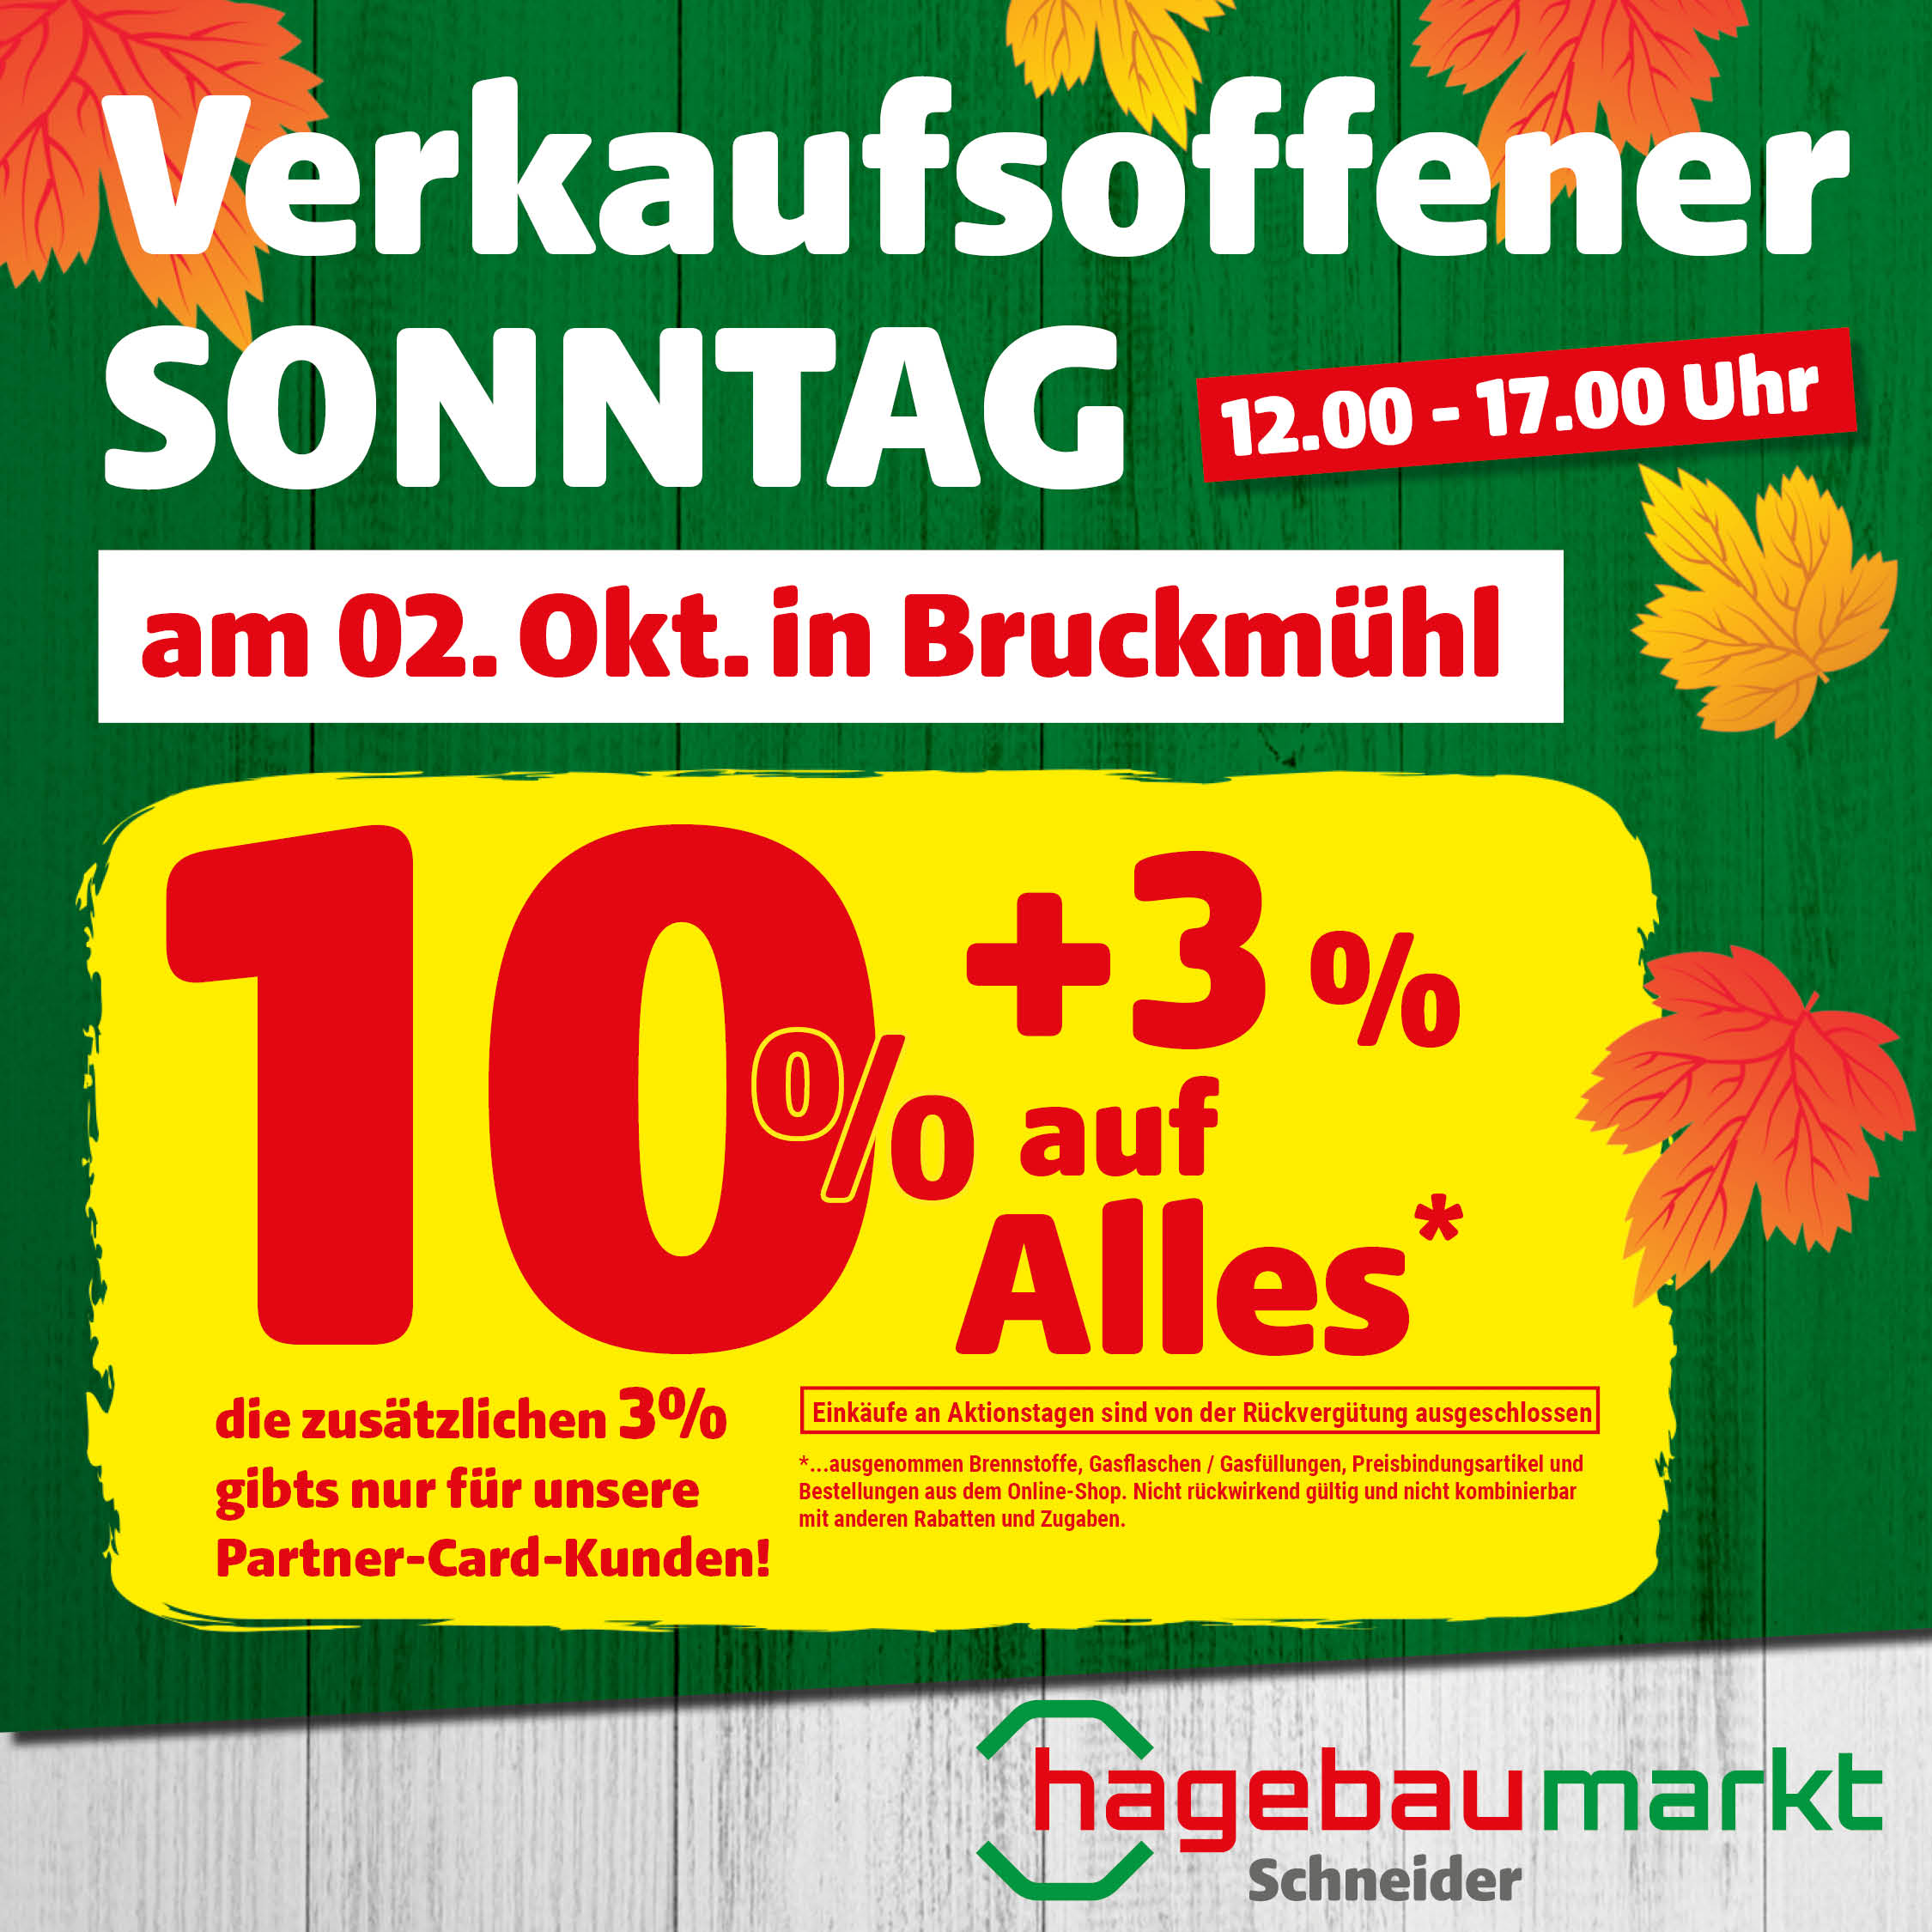 Verkaufsoffenener Sonntag in Bruckmühl am 02. Oktober 2022